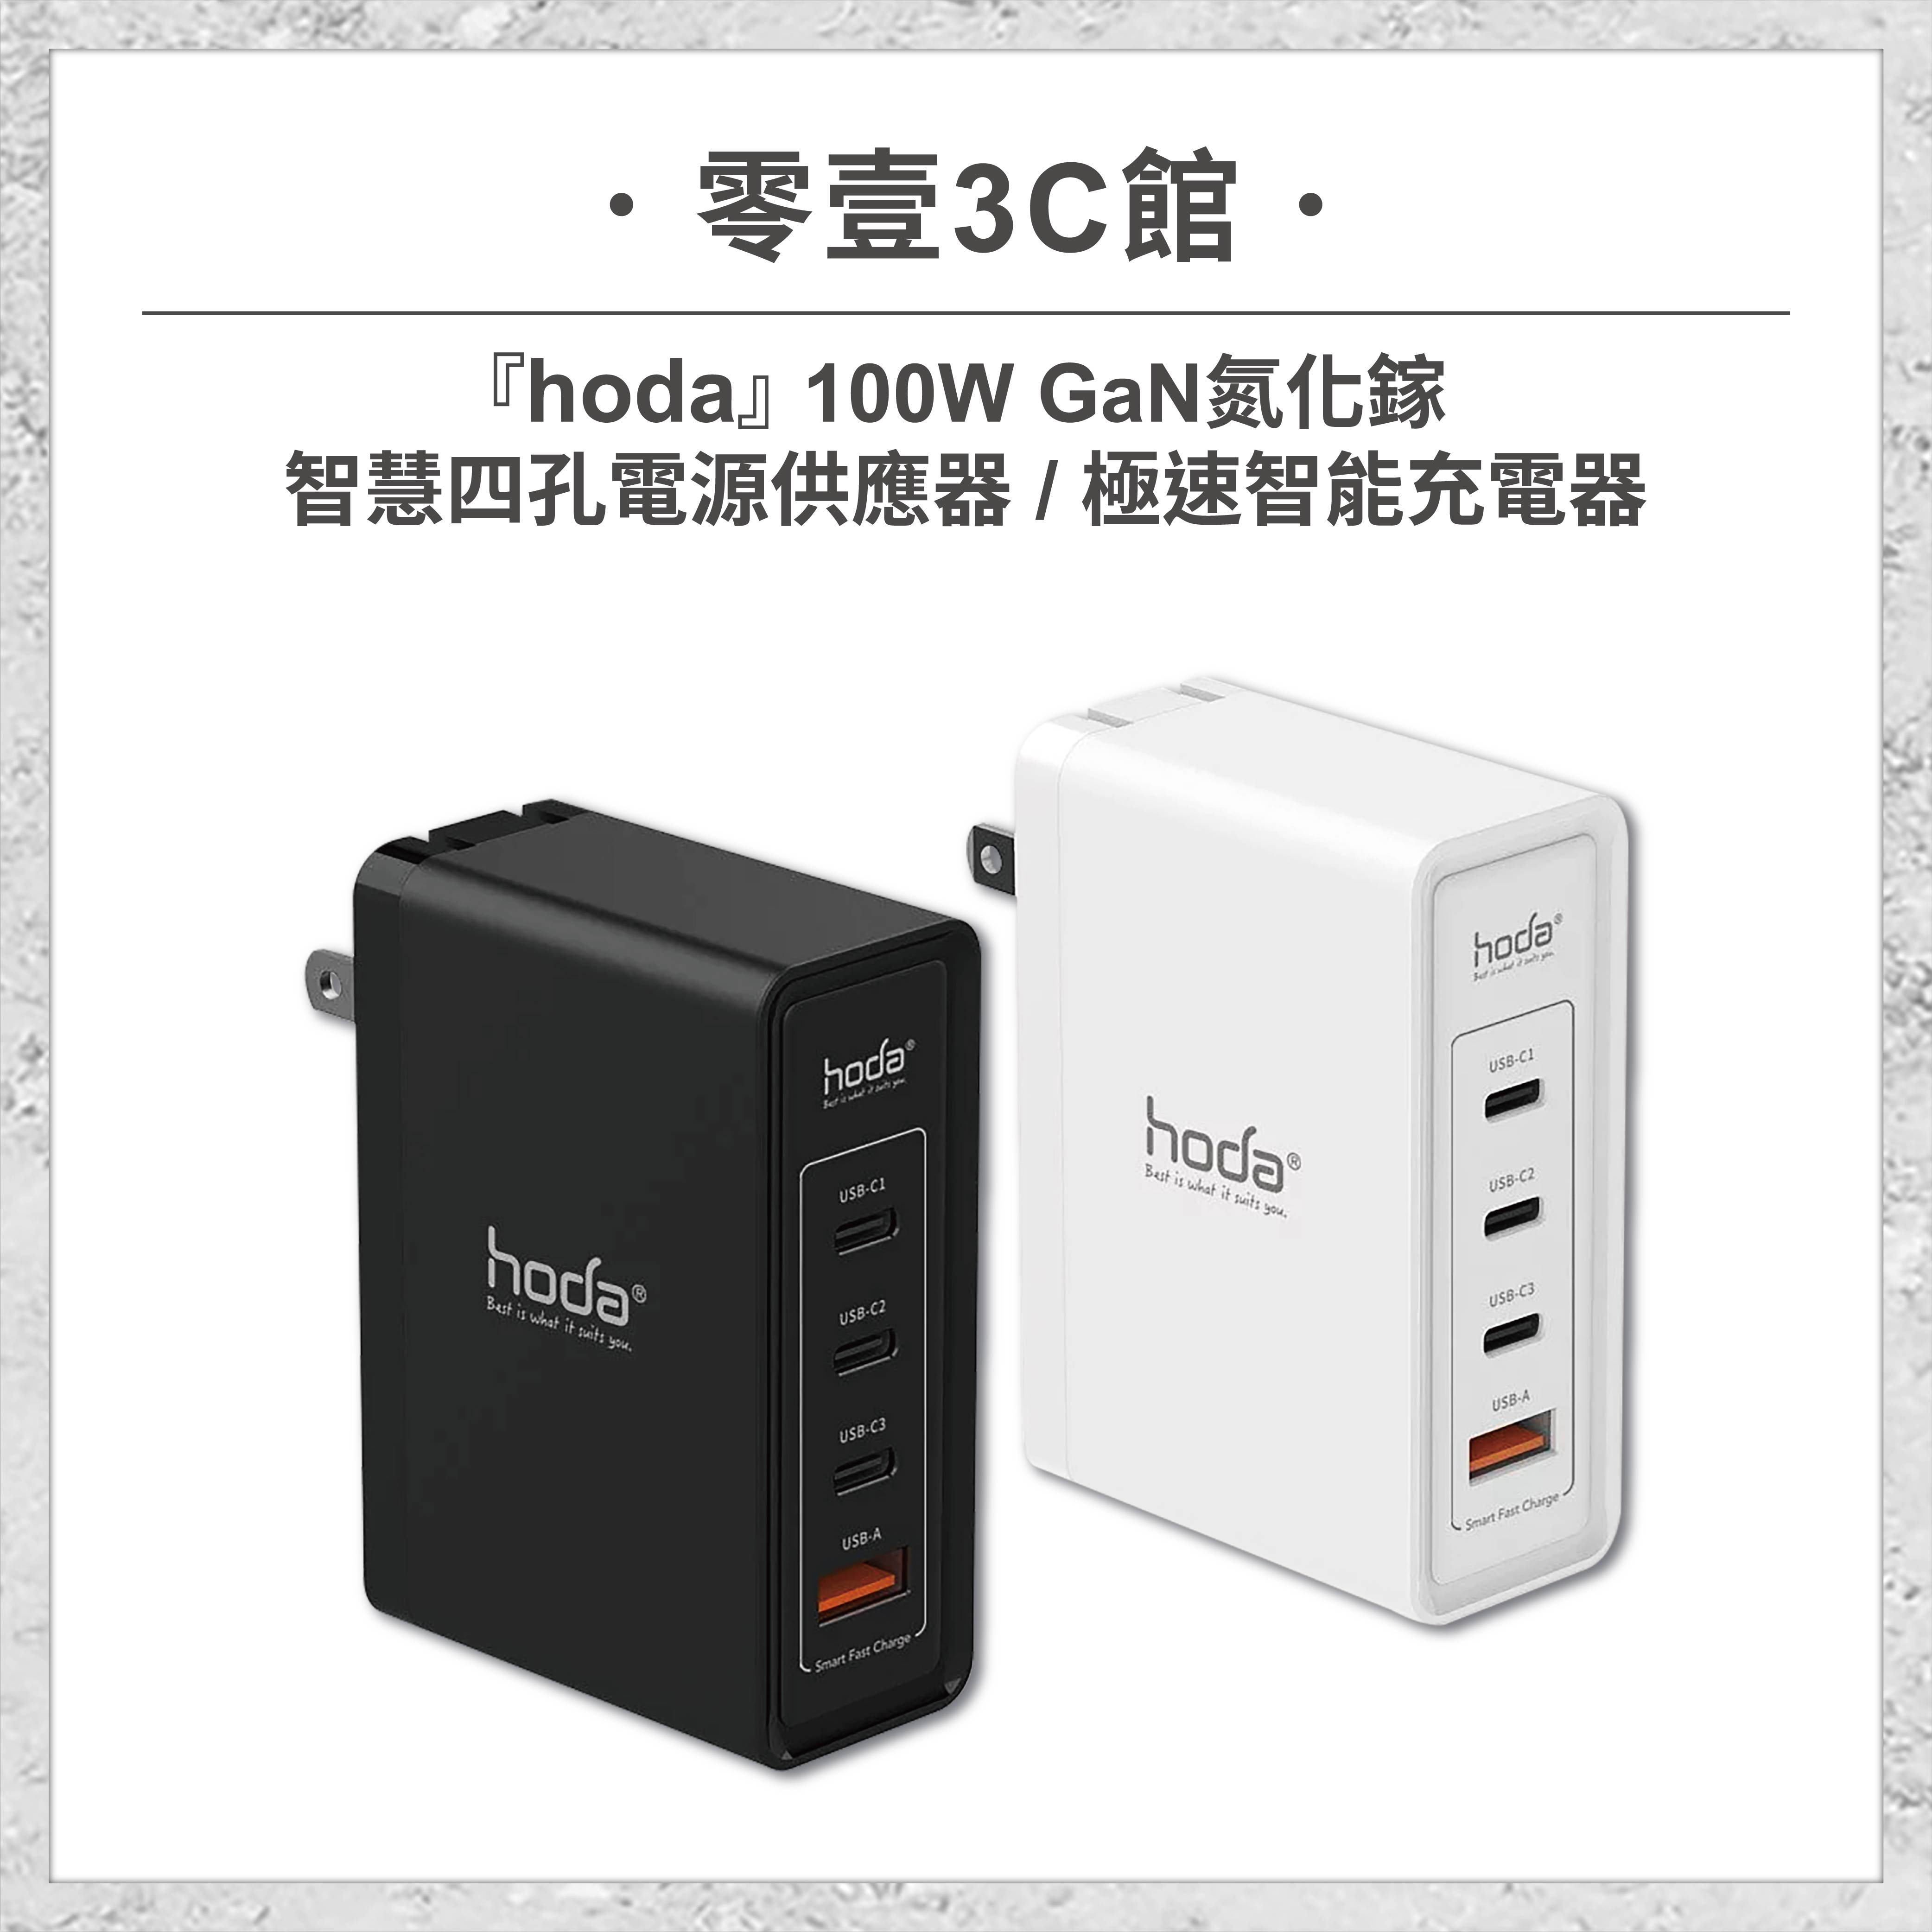 【hoda】100W GaN氮化鎵智慧四孔電源供應器 / 極速智能充電器